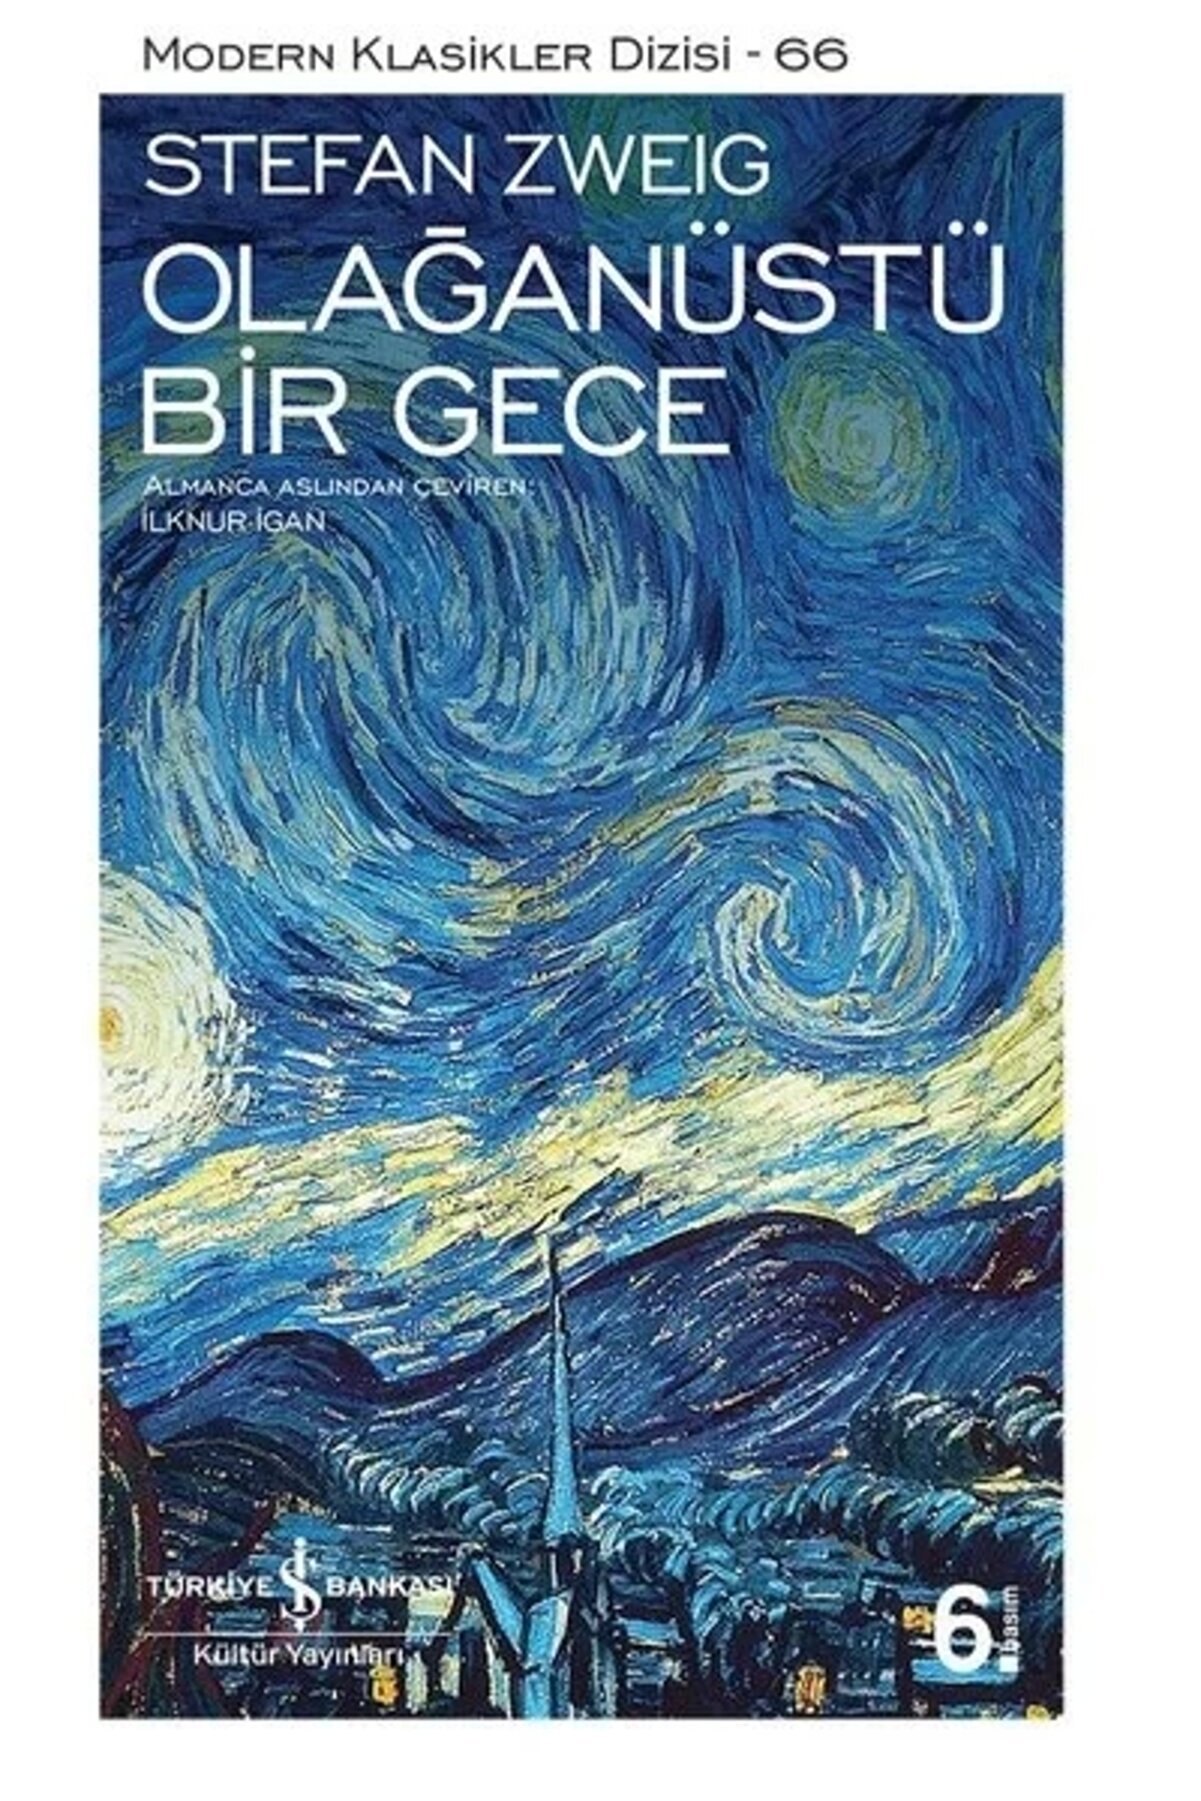 Türkiye İş Bankası Kültür Yayınları Olağanüstü Bir Gece